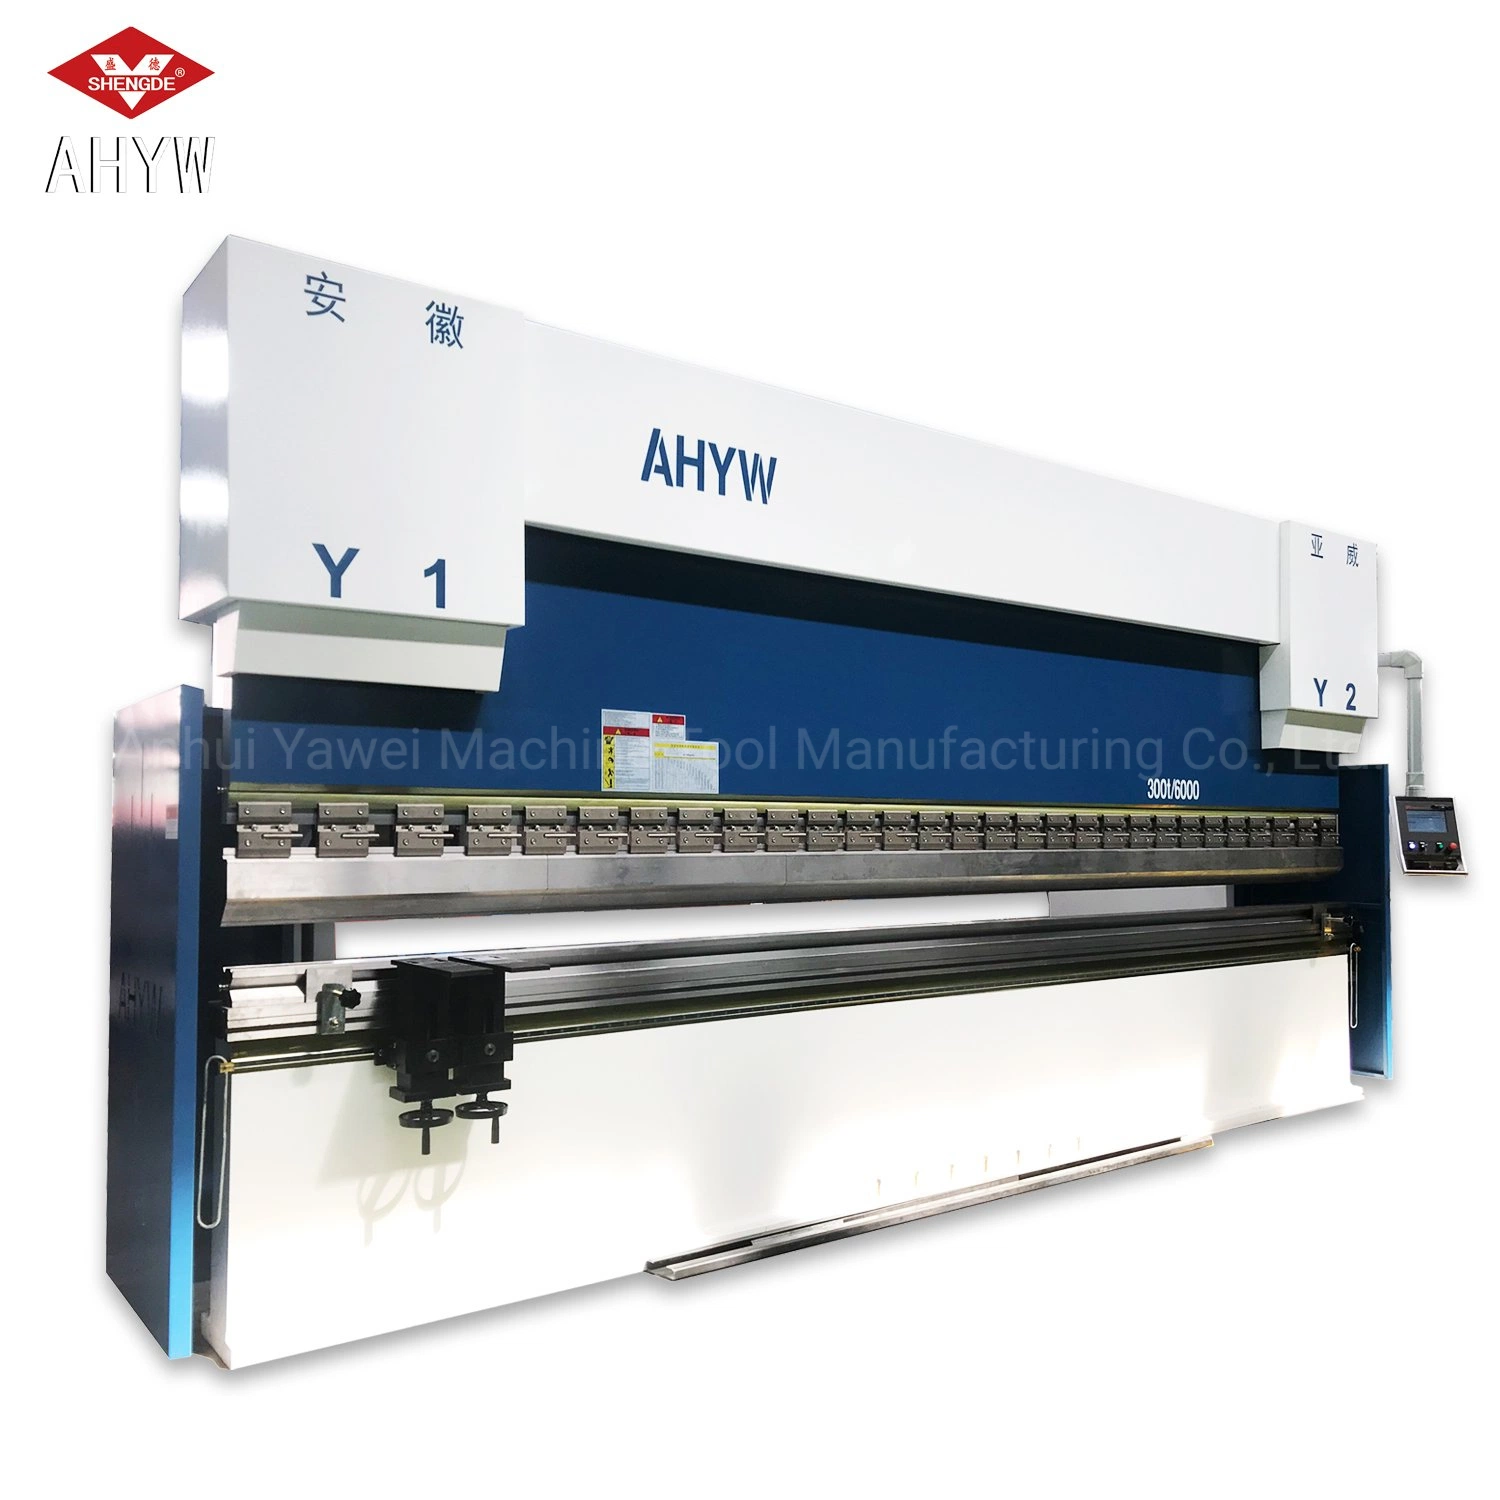 CNC Hydraulische Biegemaschine für Metallplattenherstellung und -Verarbeitung